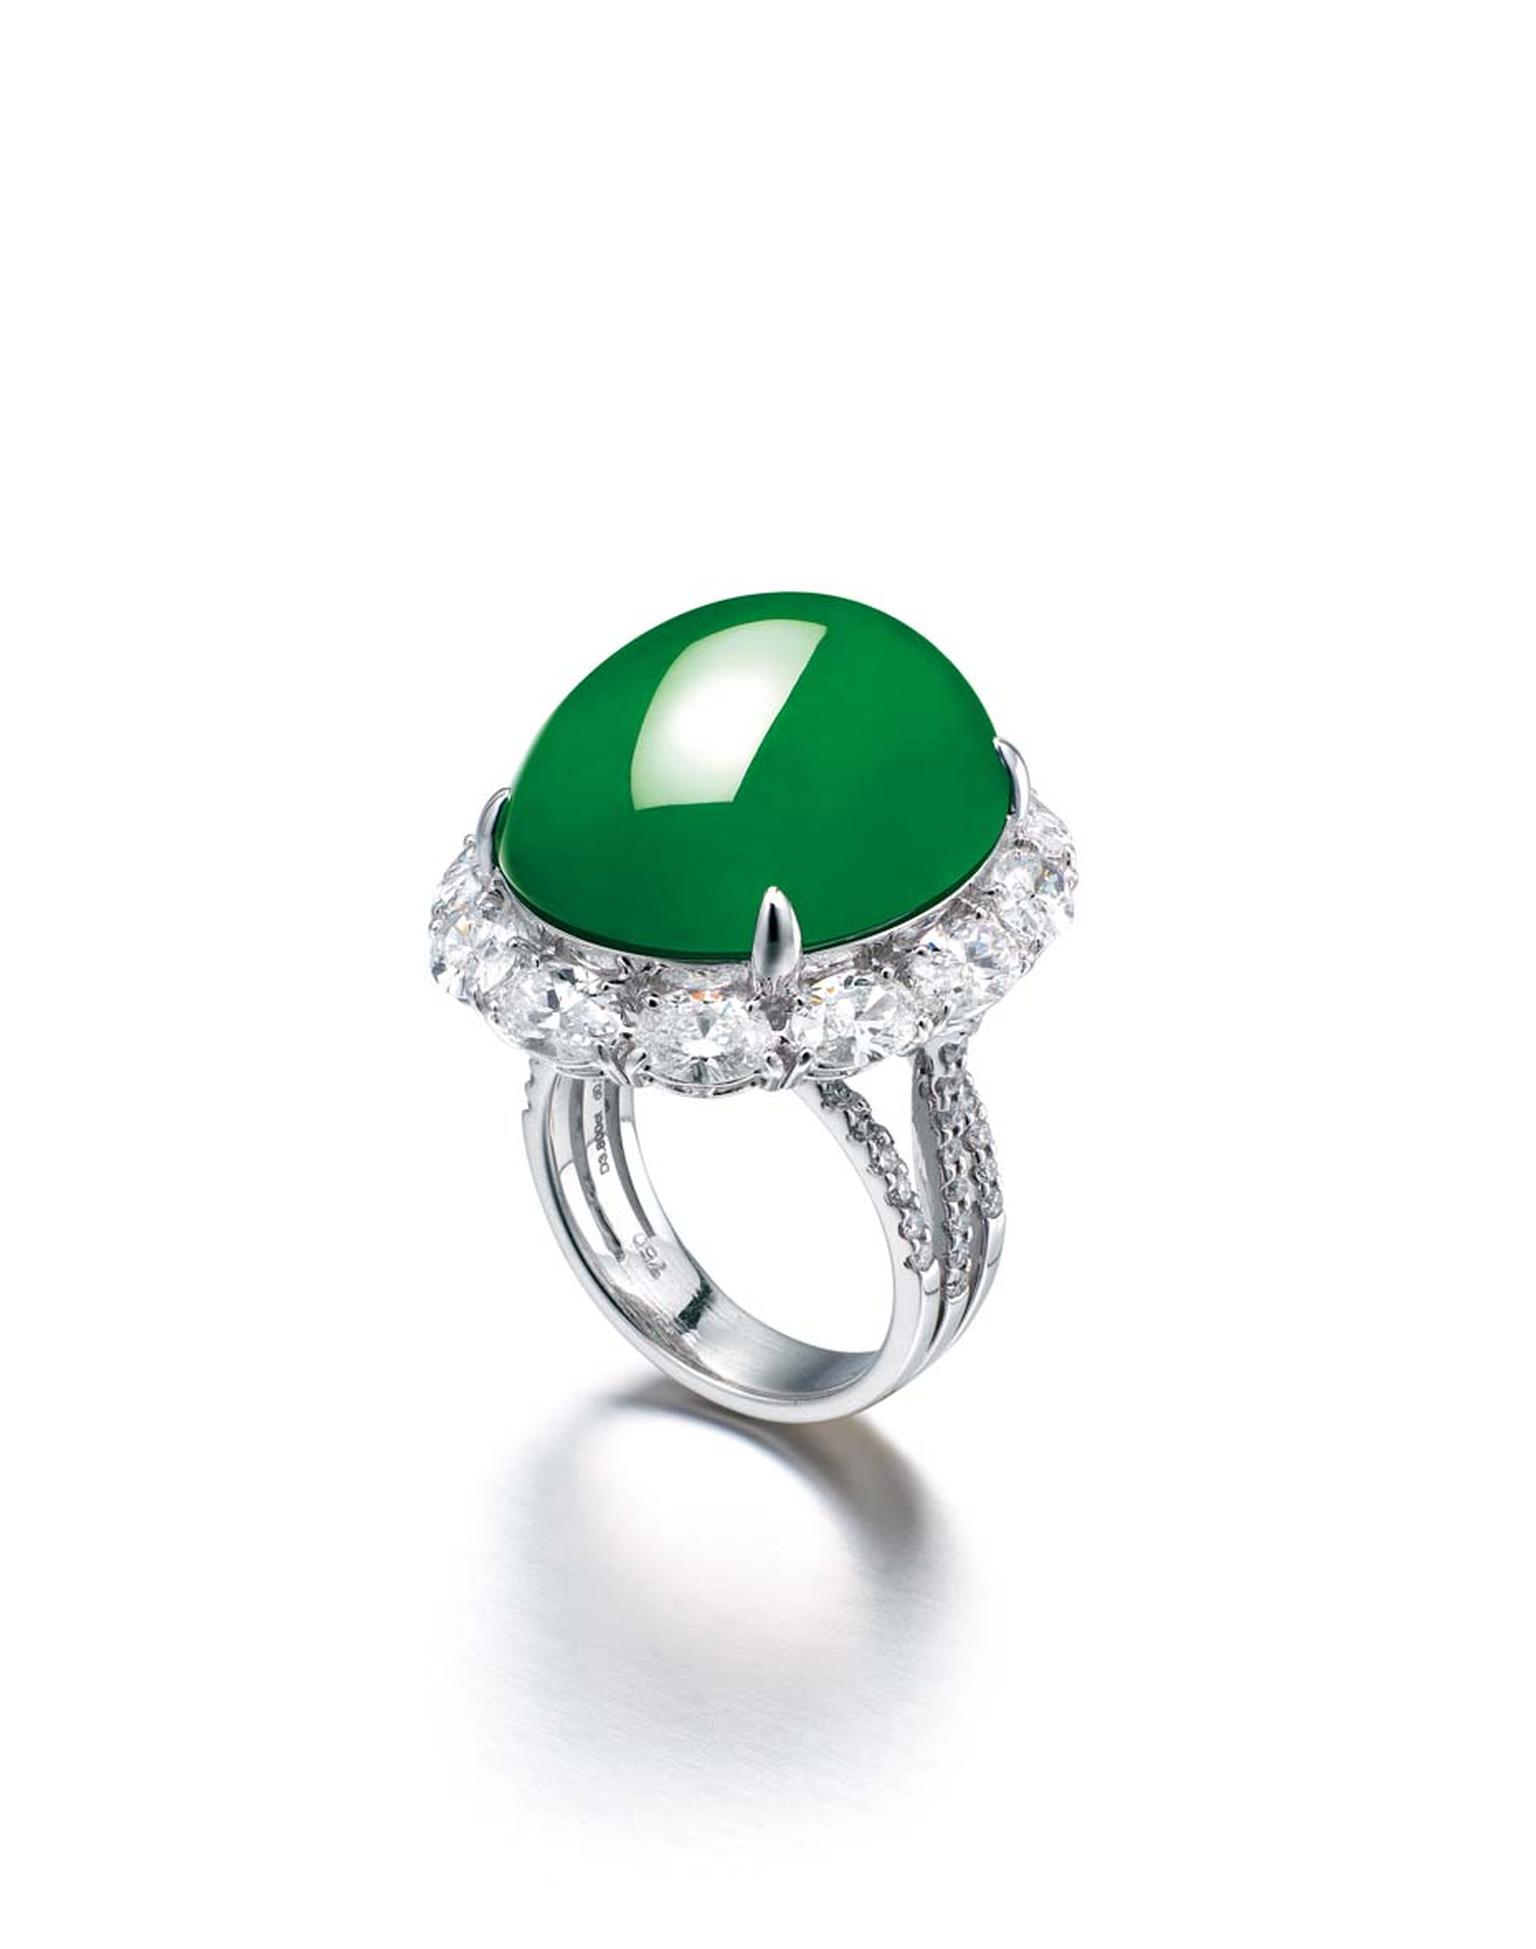 Chow Tai Fook jadeite and diamond ring